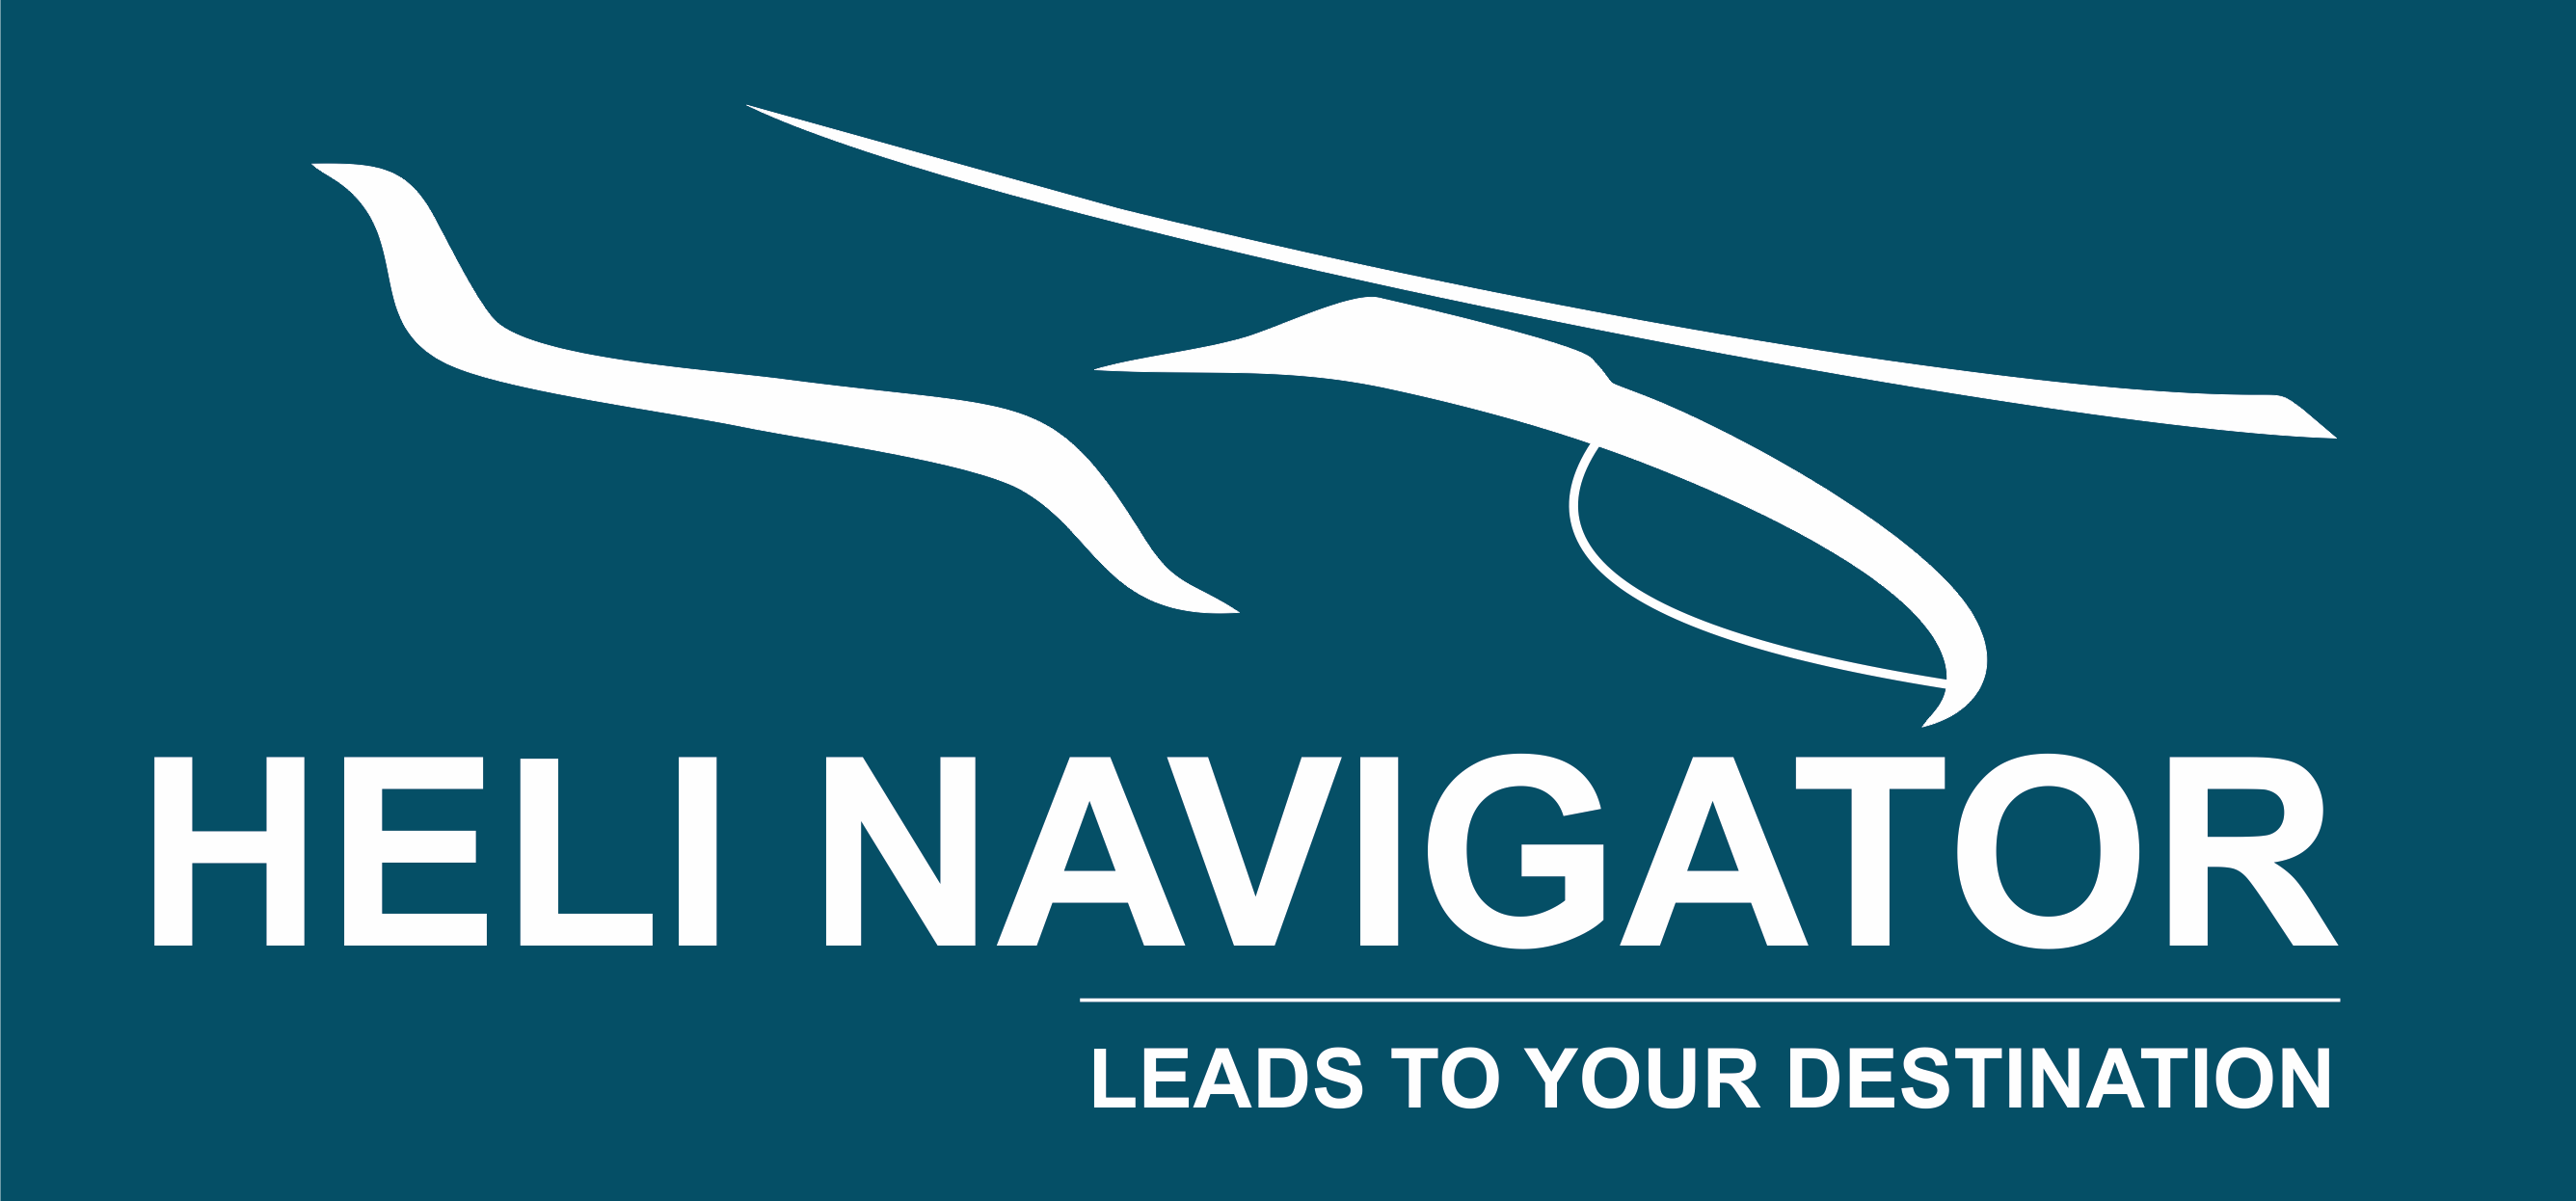 Heli Navigator